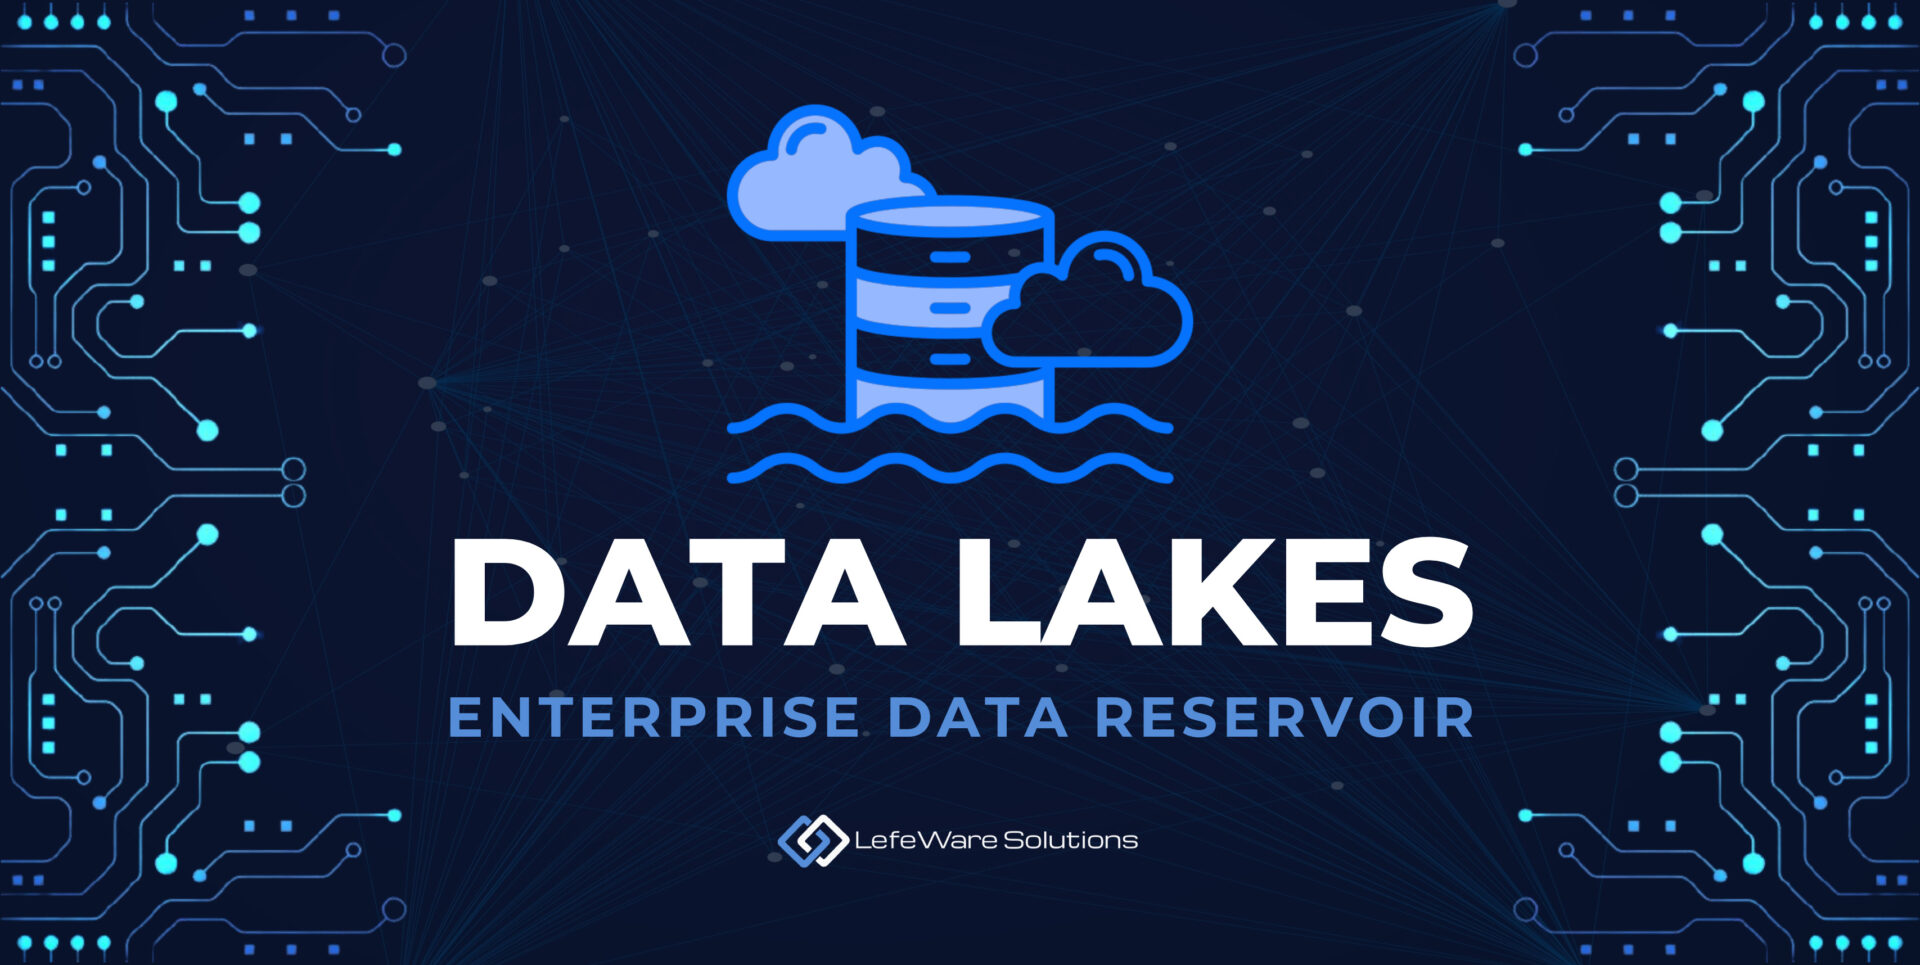 Data Lakes: The Reservoir of Enterprise Data